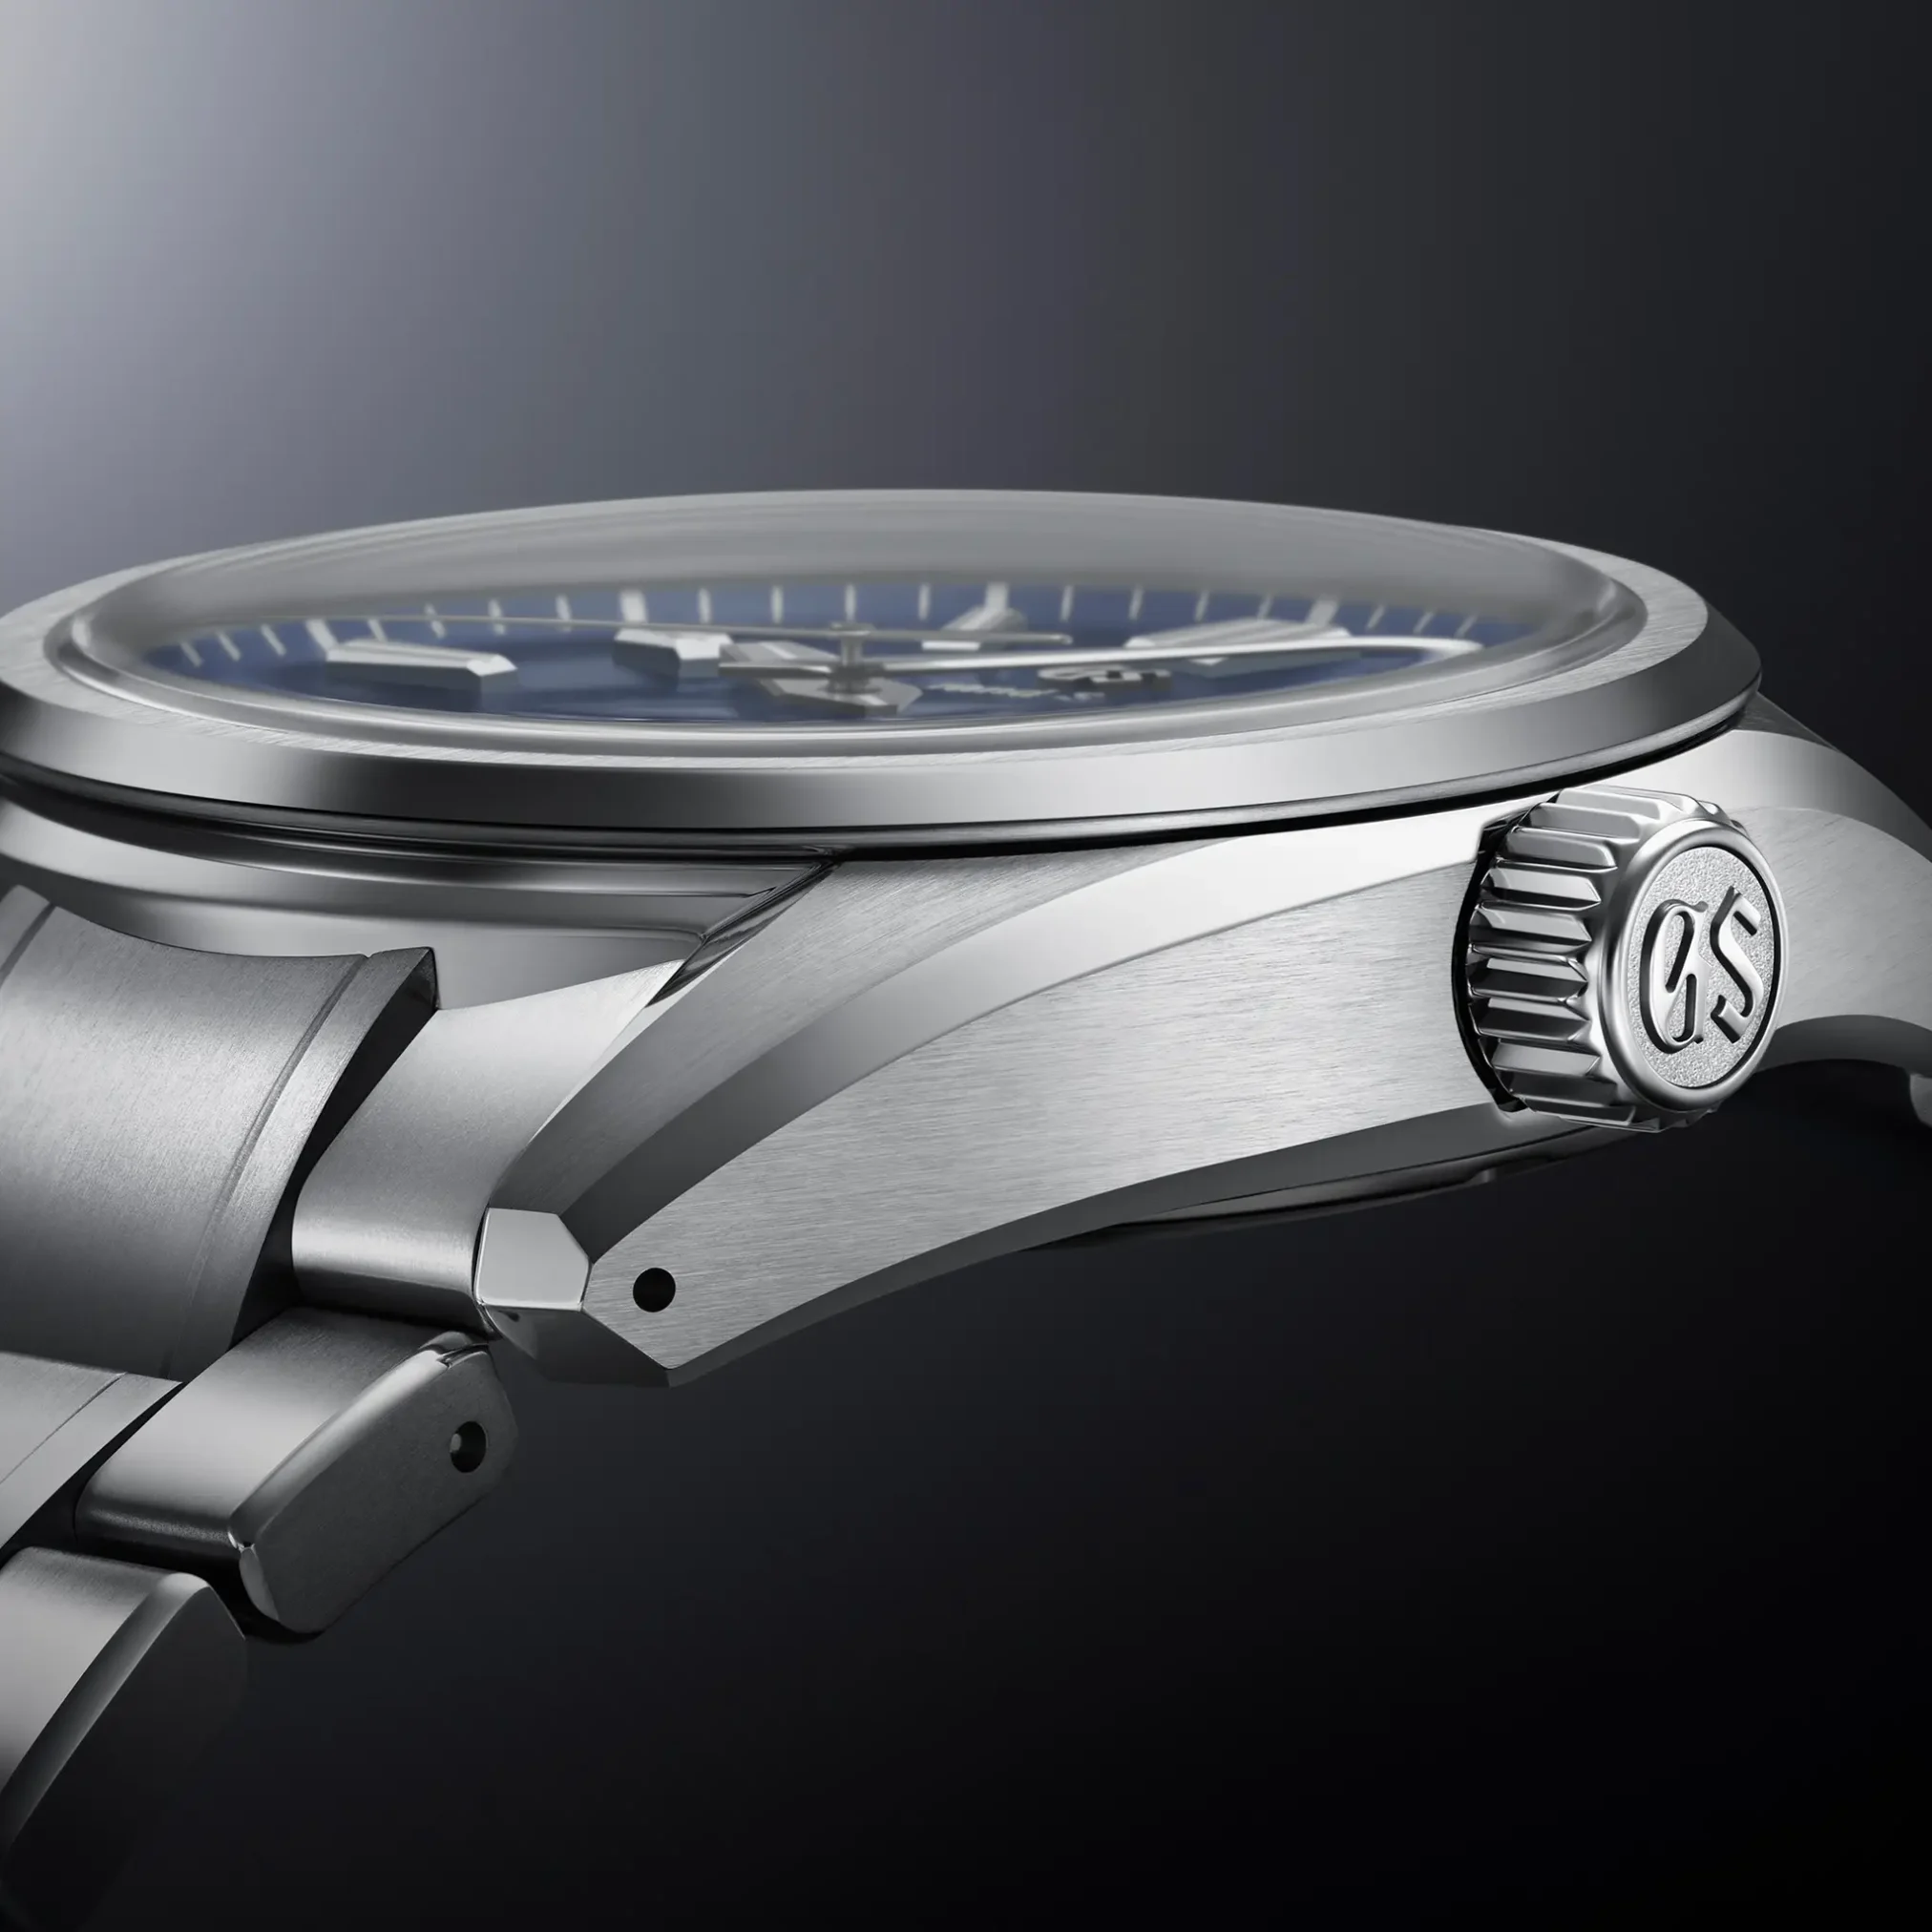 Đồng hồ Grand Seiko Evolution 9 Collection SLGA019 mặt số màu xanh. Dây đeo bằng titanium. Thân vỏ bằng titanium.